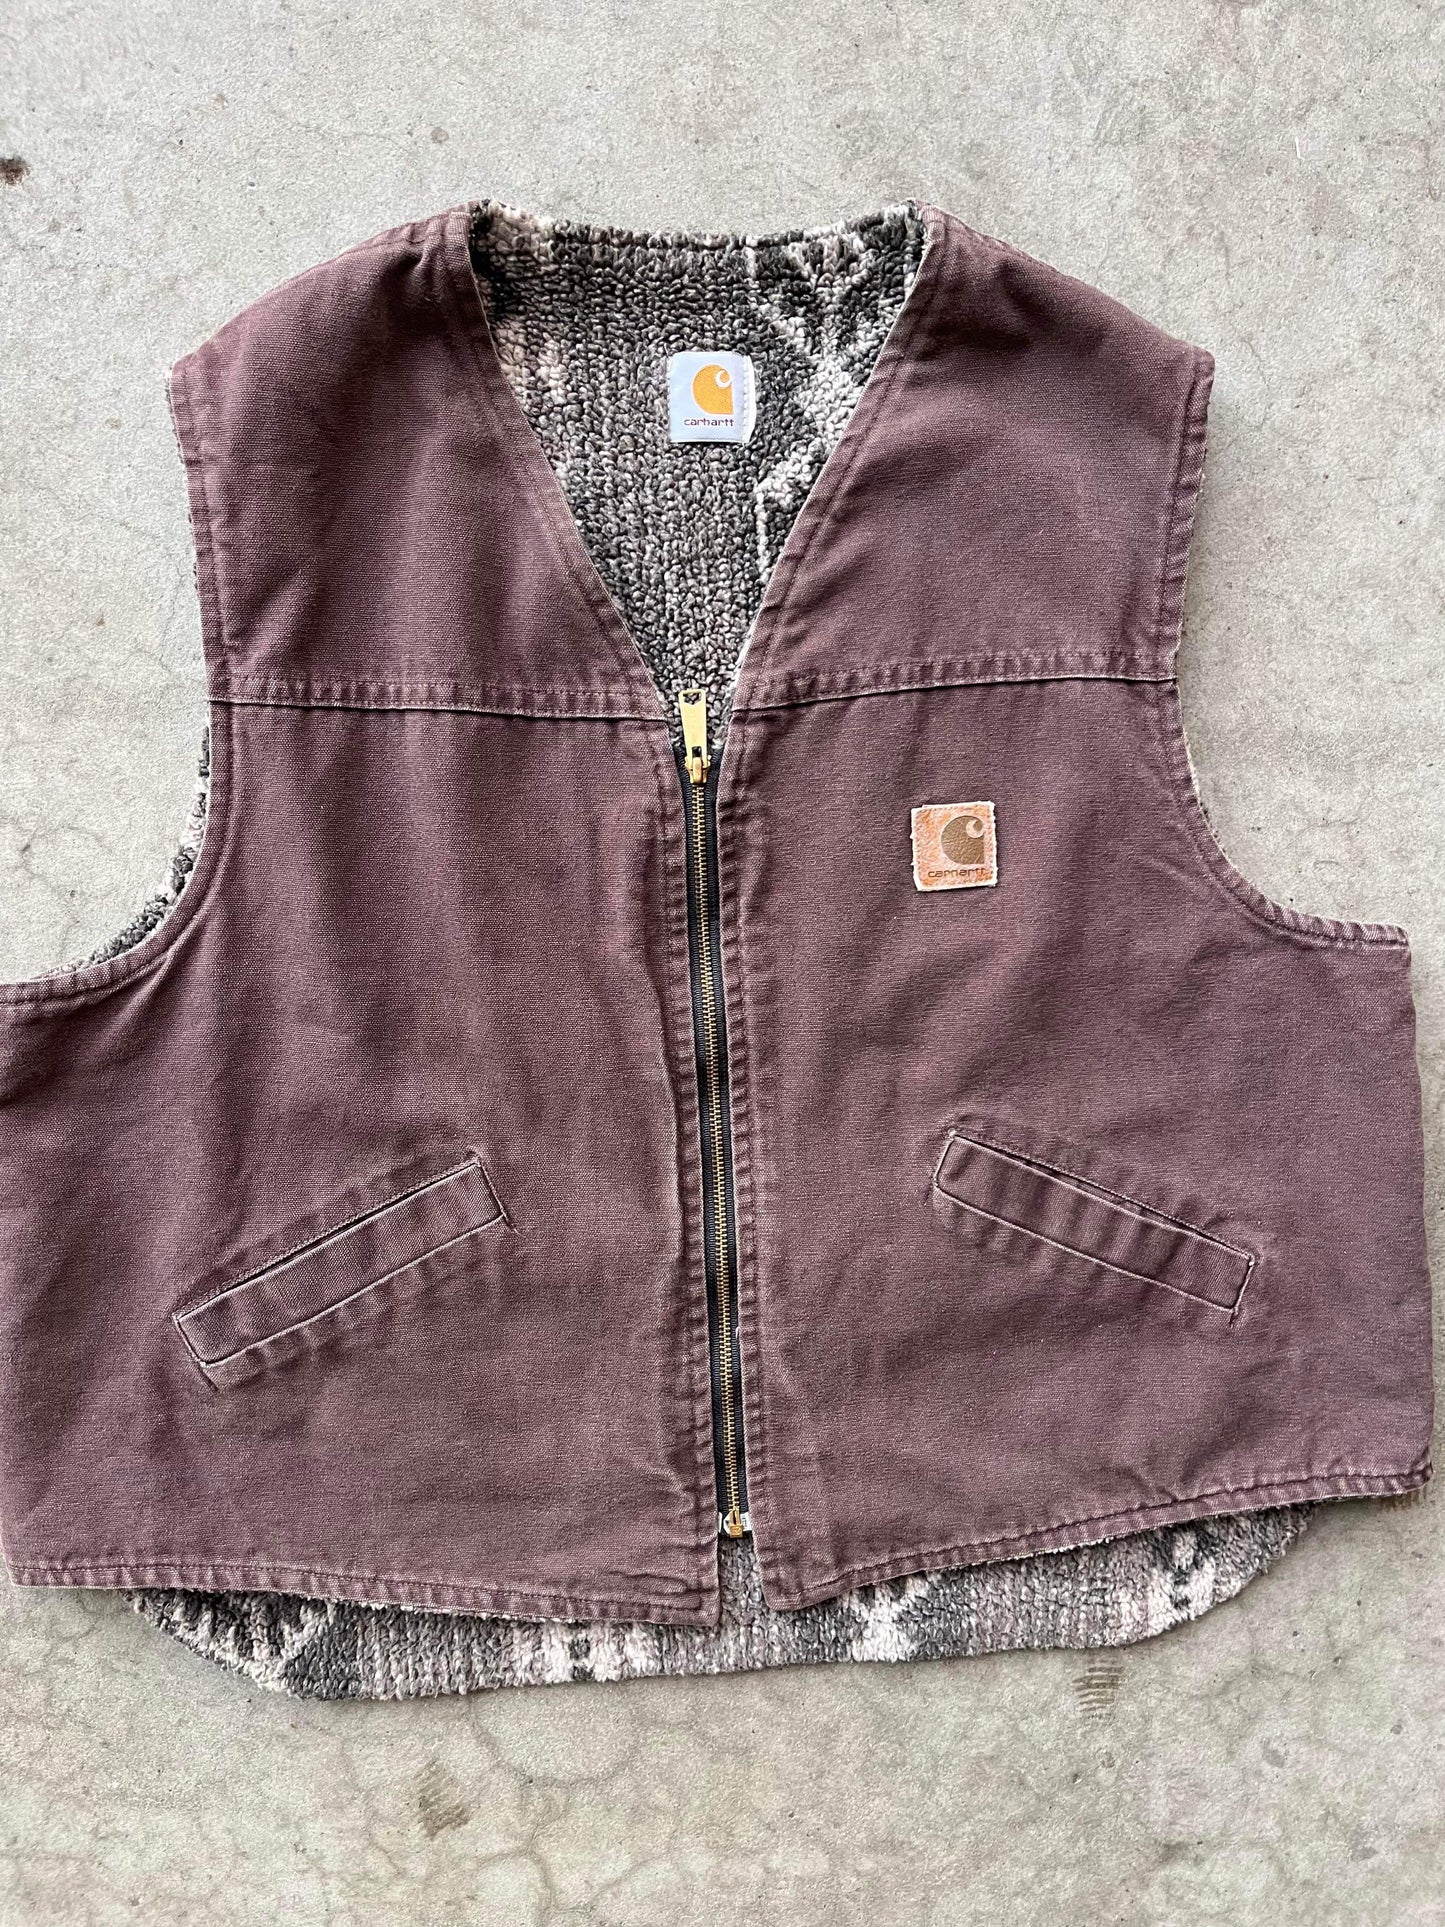 (XL/2X) Fleece Lined Carhartt Vest